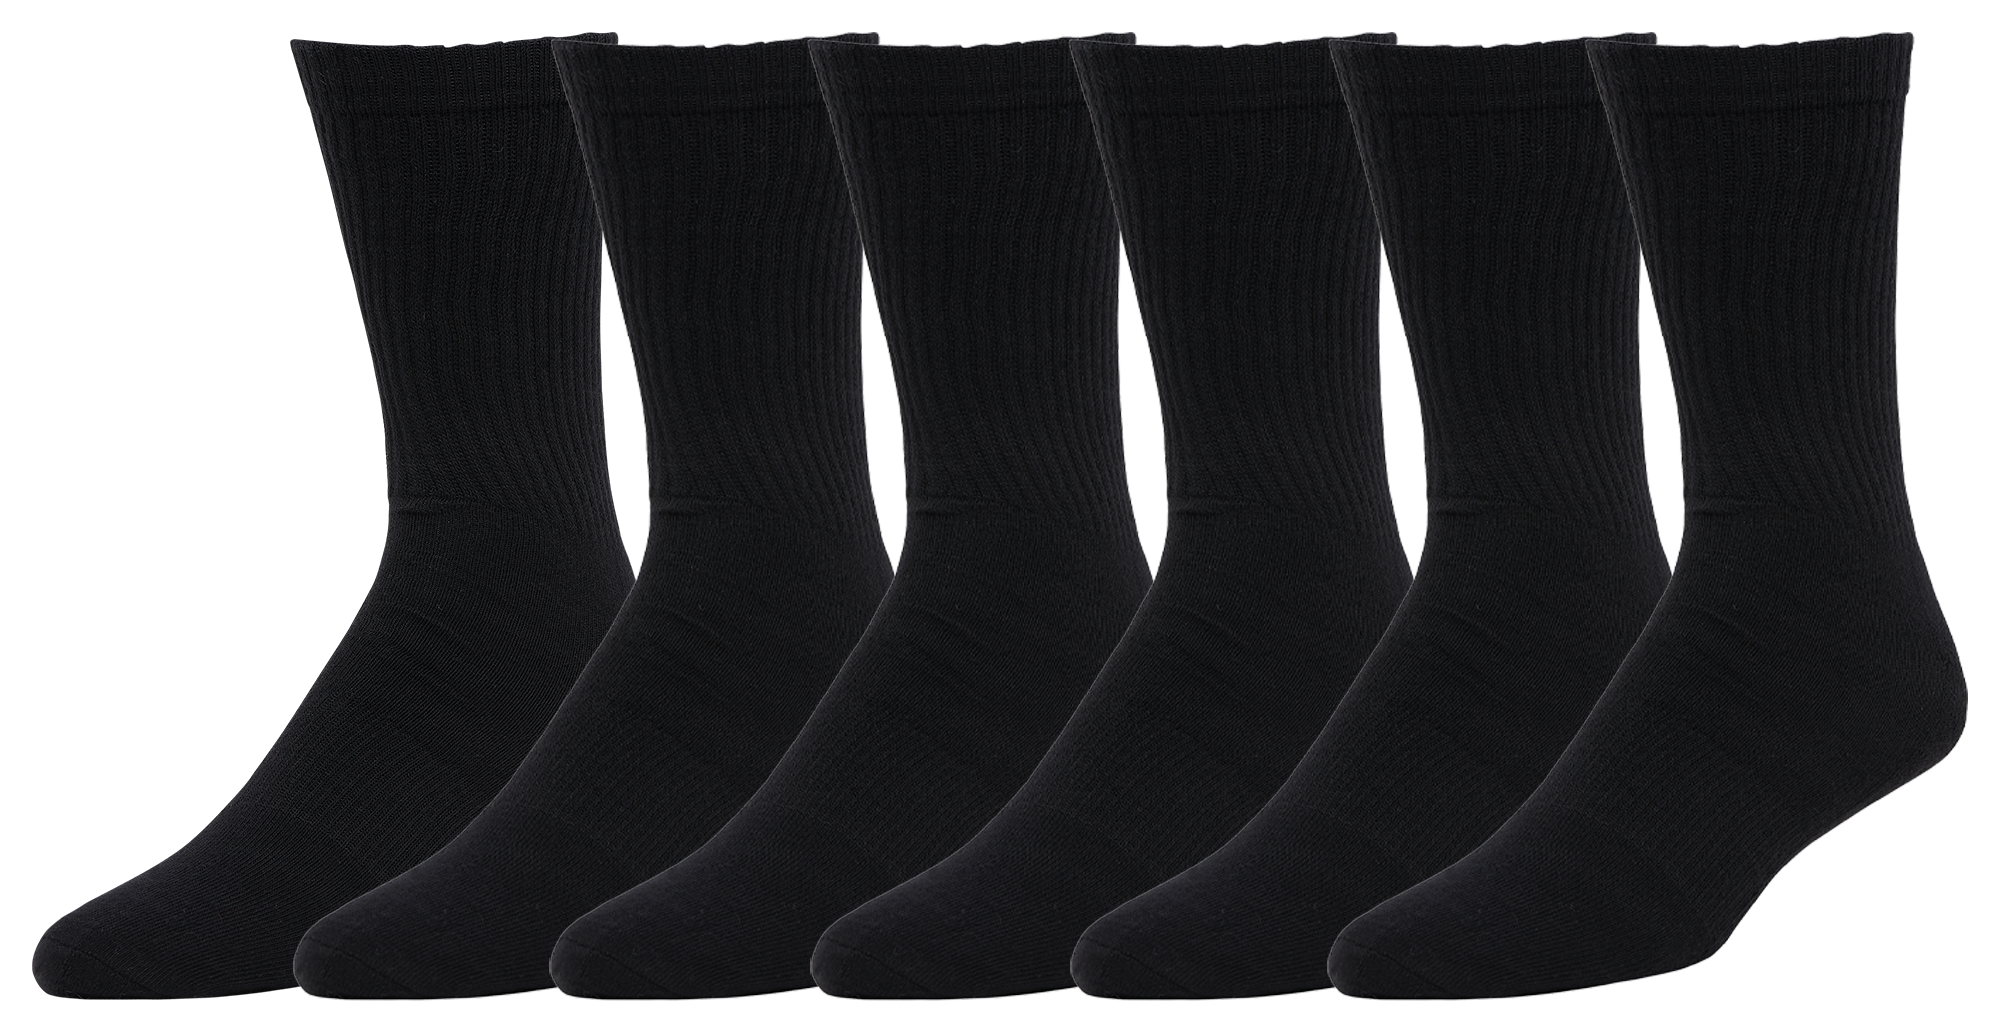 Black Socks  Foot Locker Canada